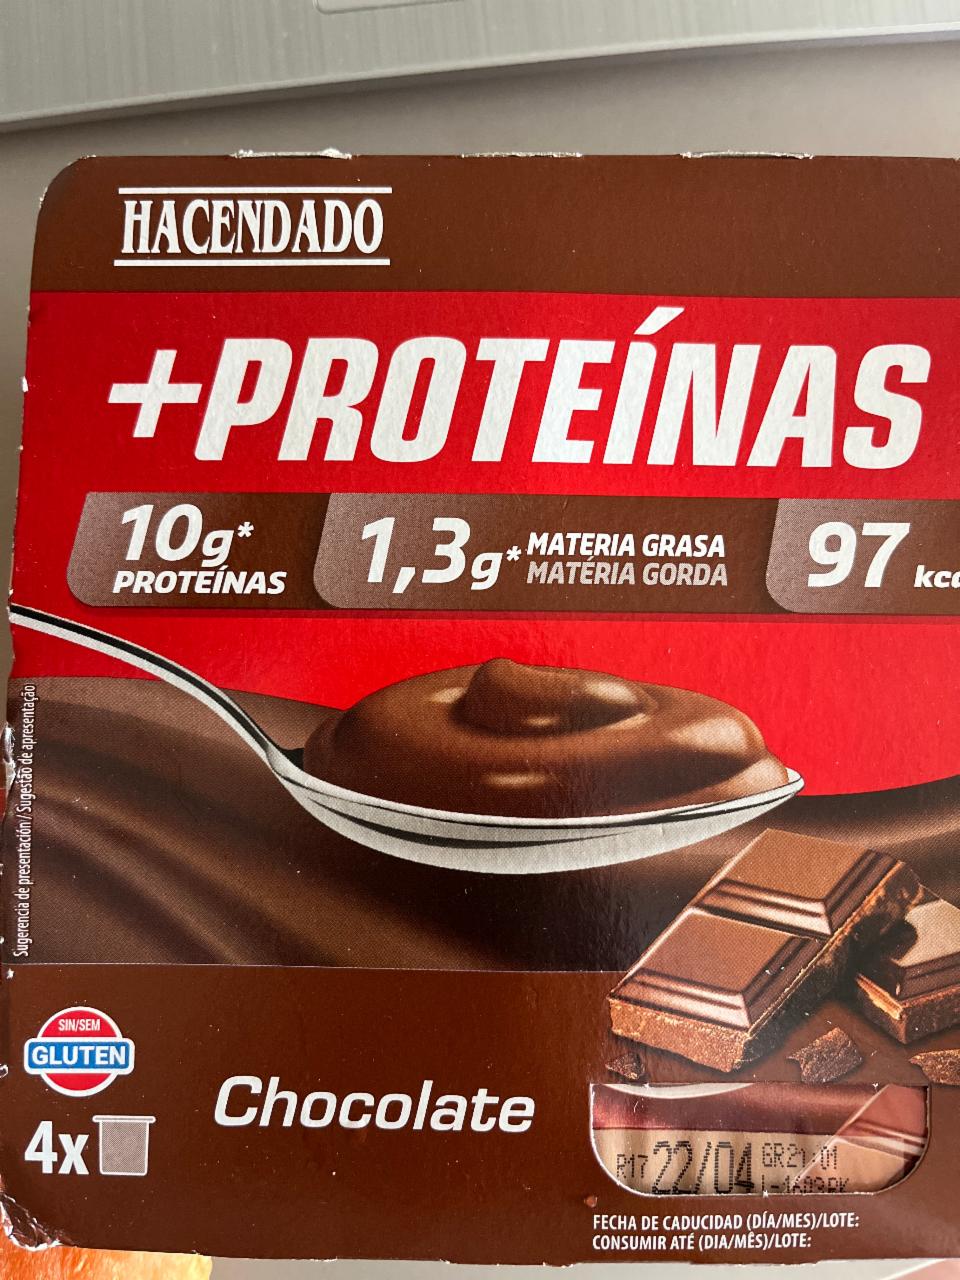 Фото - Протеиновый шоколадный йогурт Hacendado